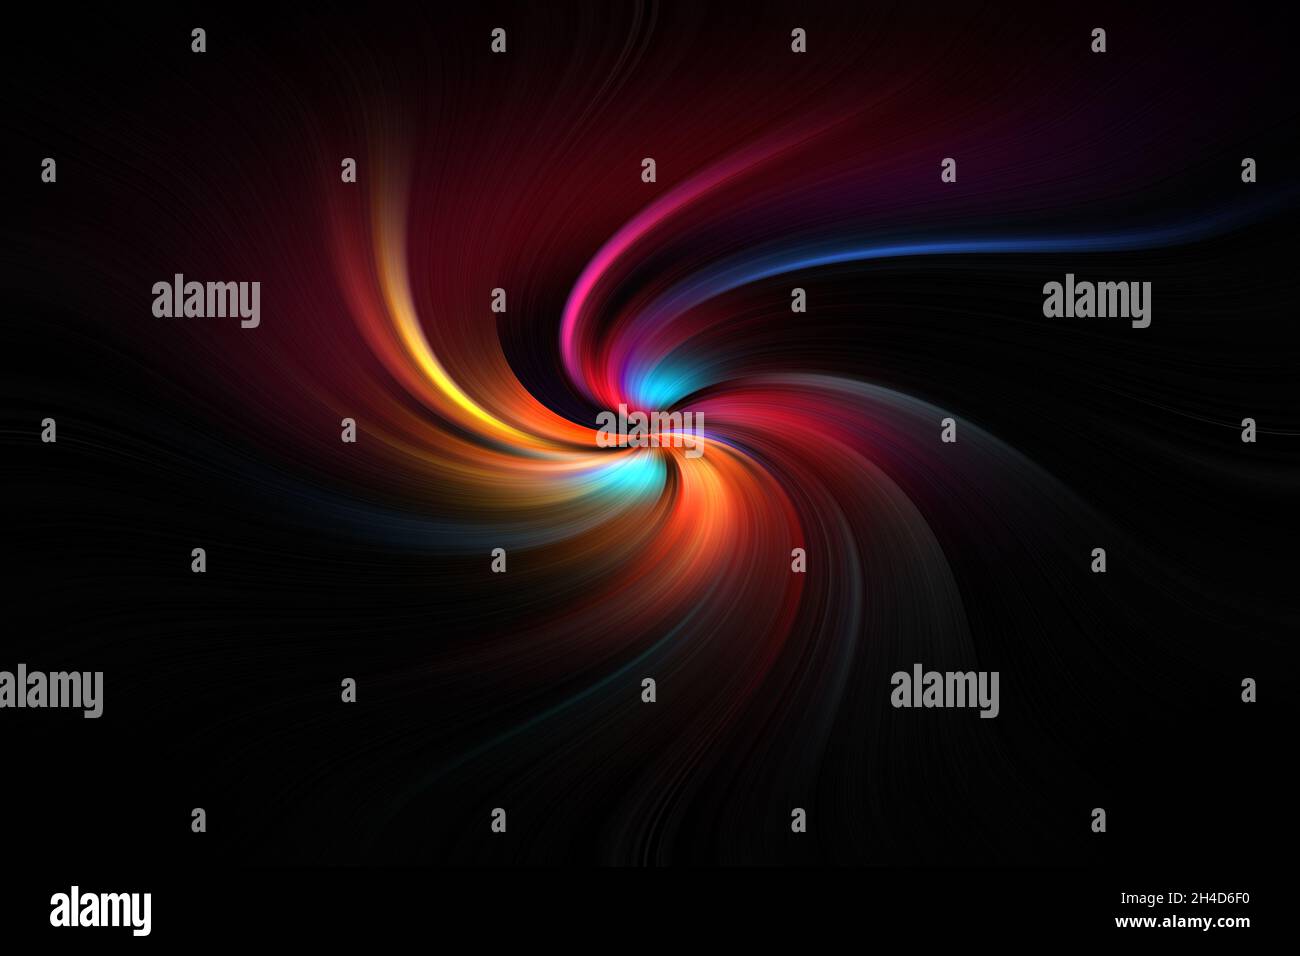 Striped-Technologie, Hi-Tech- oder Sci-Fi-Hintergrund, abstraktes, computergeneriertes Bild. Fraktale Geometrie: Schwarze, blaue, gelbe, rote Spirale mit gewelltem Strahl Stockfoto